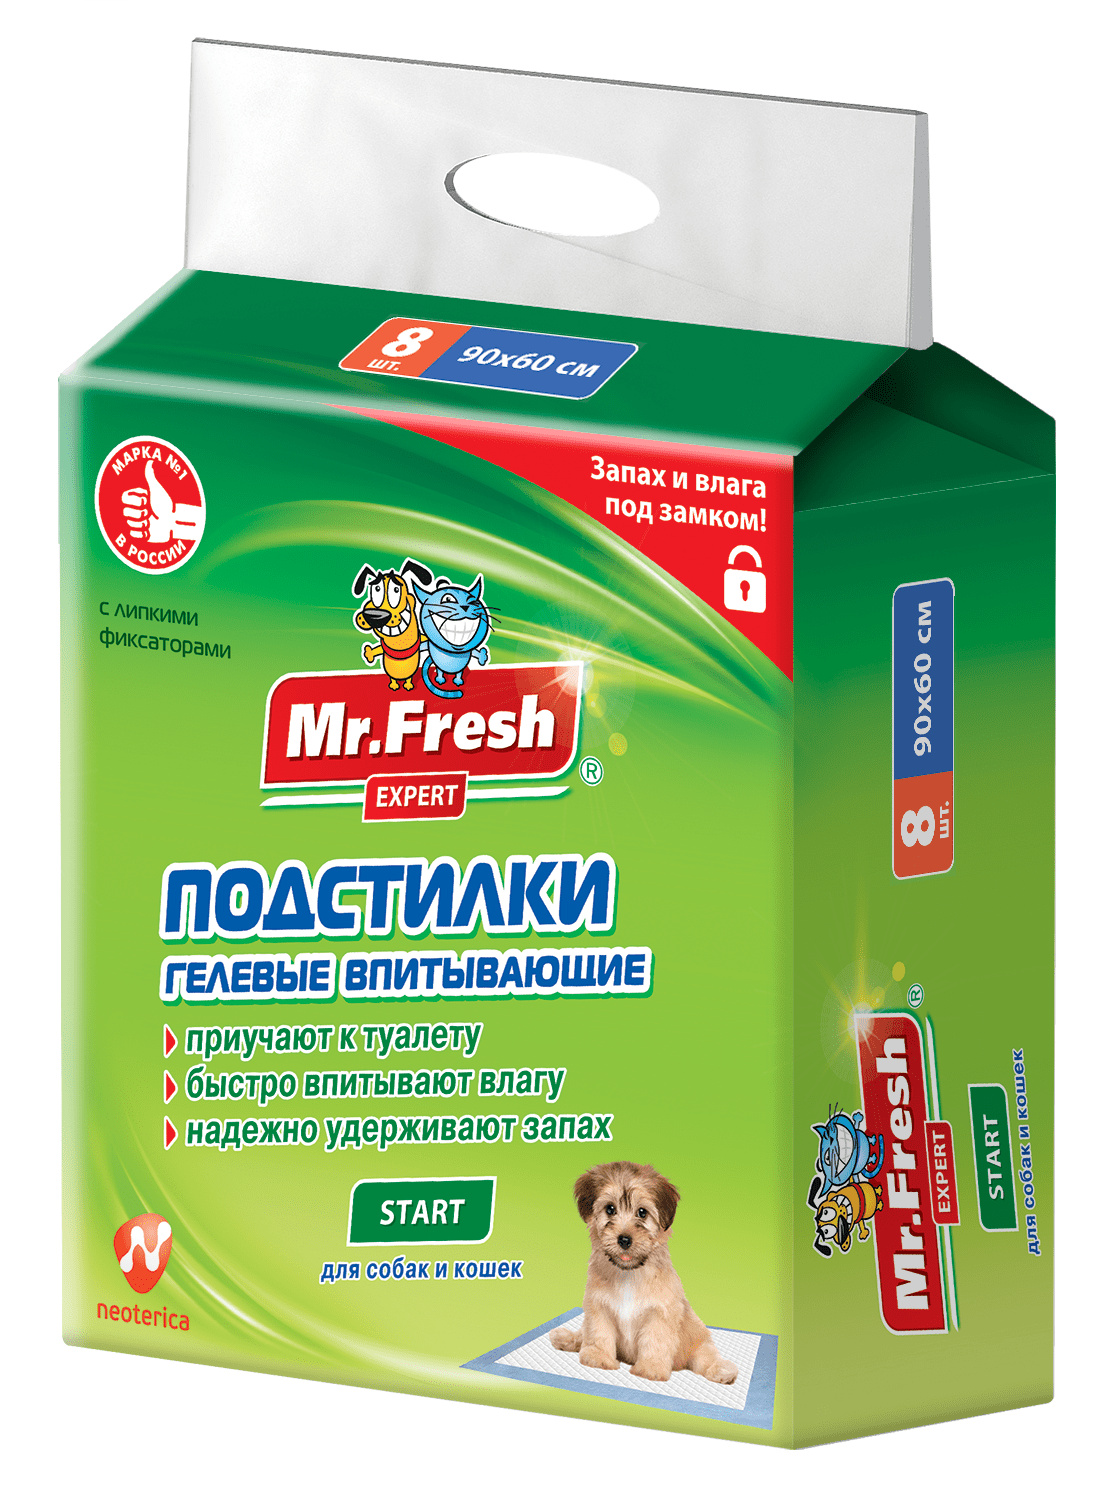 Mr.Fresh подстилка-пеленка для кошек и собак Expert  Super, впитывающая, 40 см*60 см, 10 см шт (40*60 см)